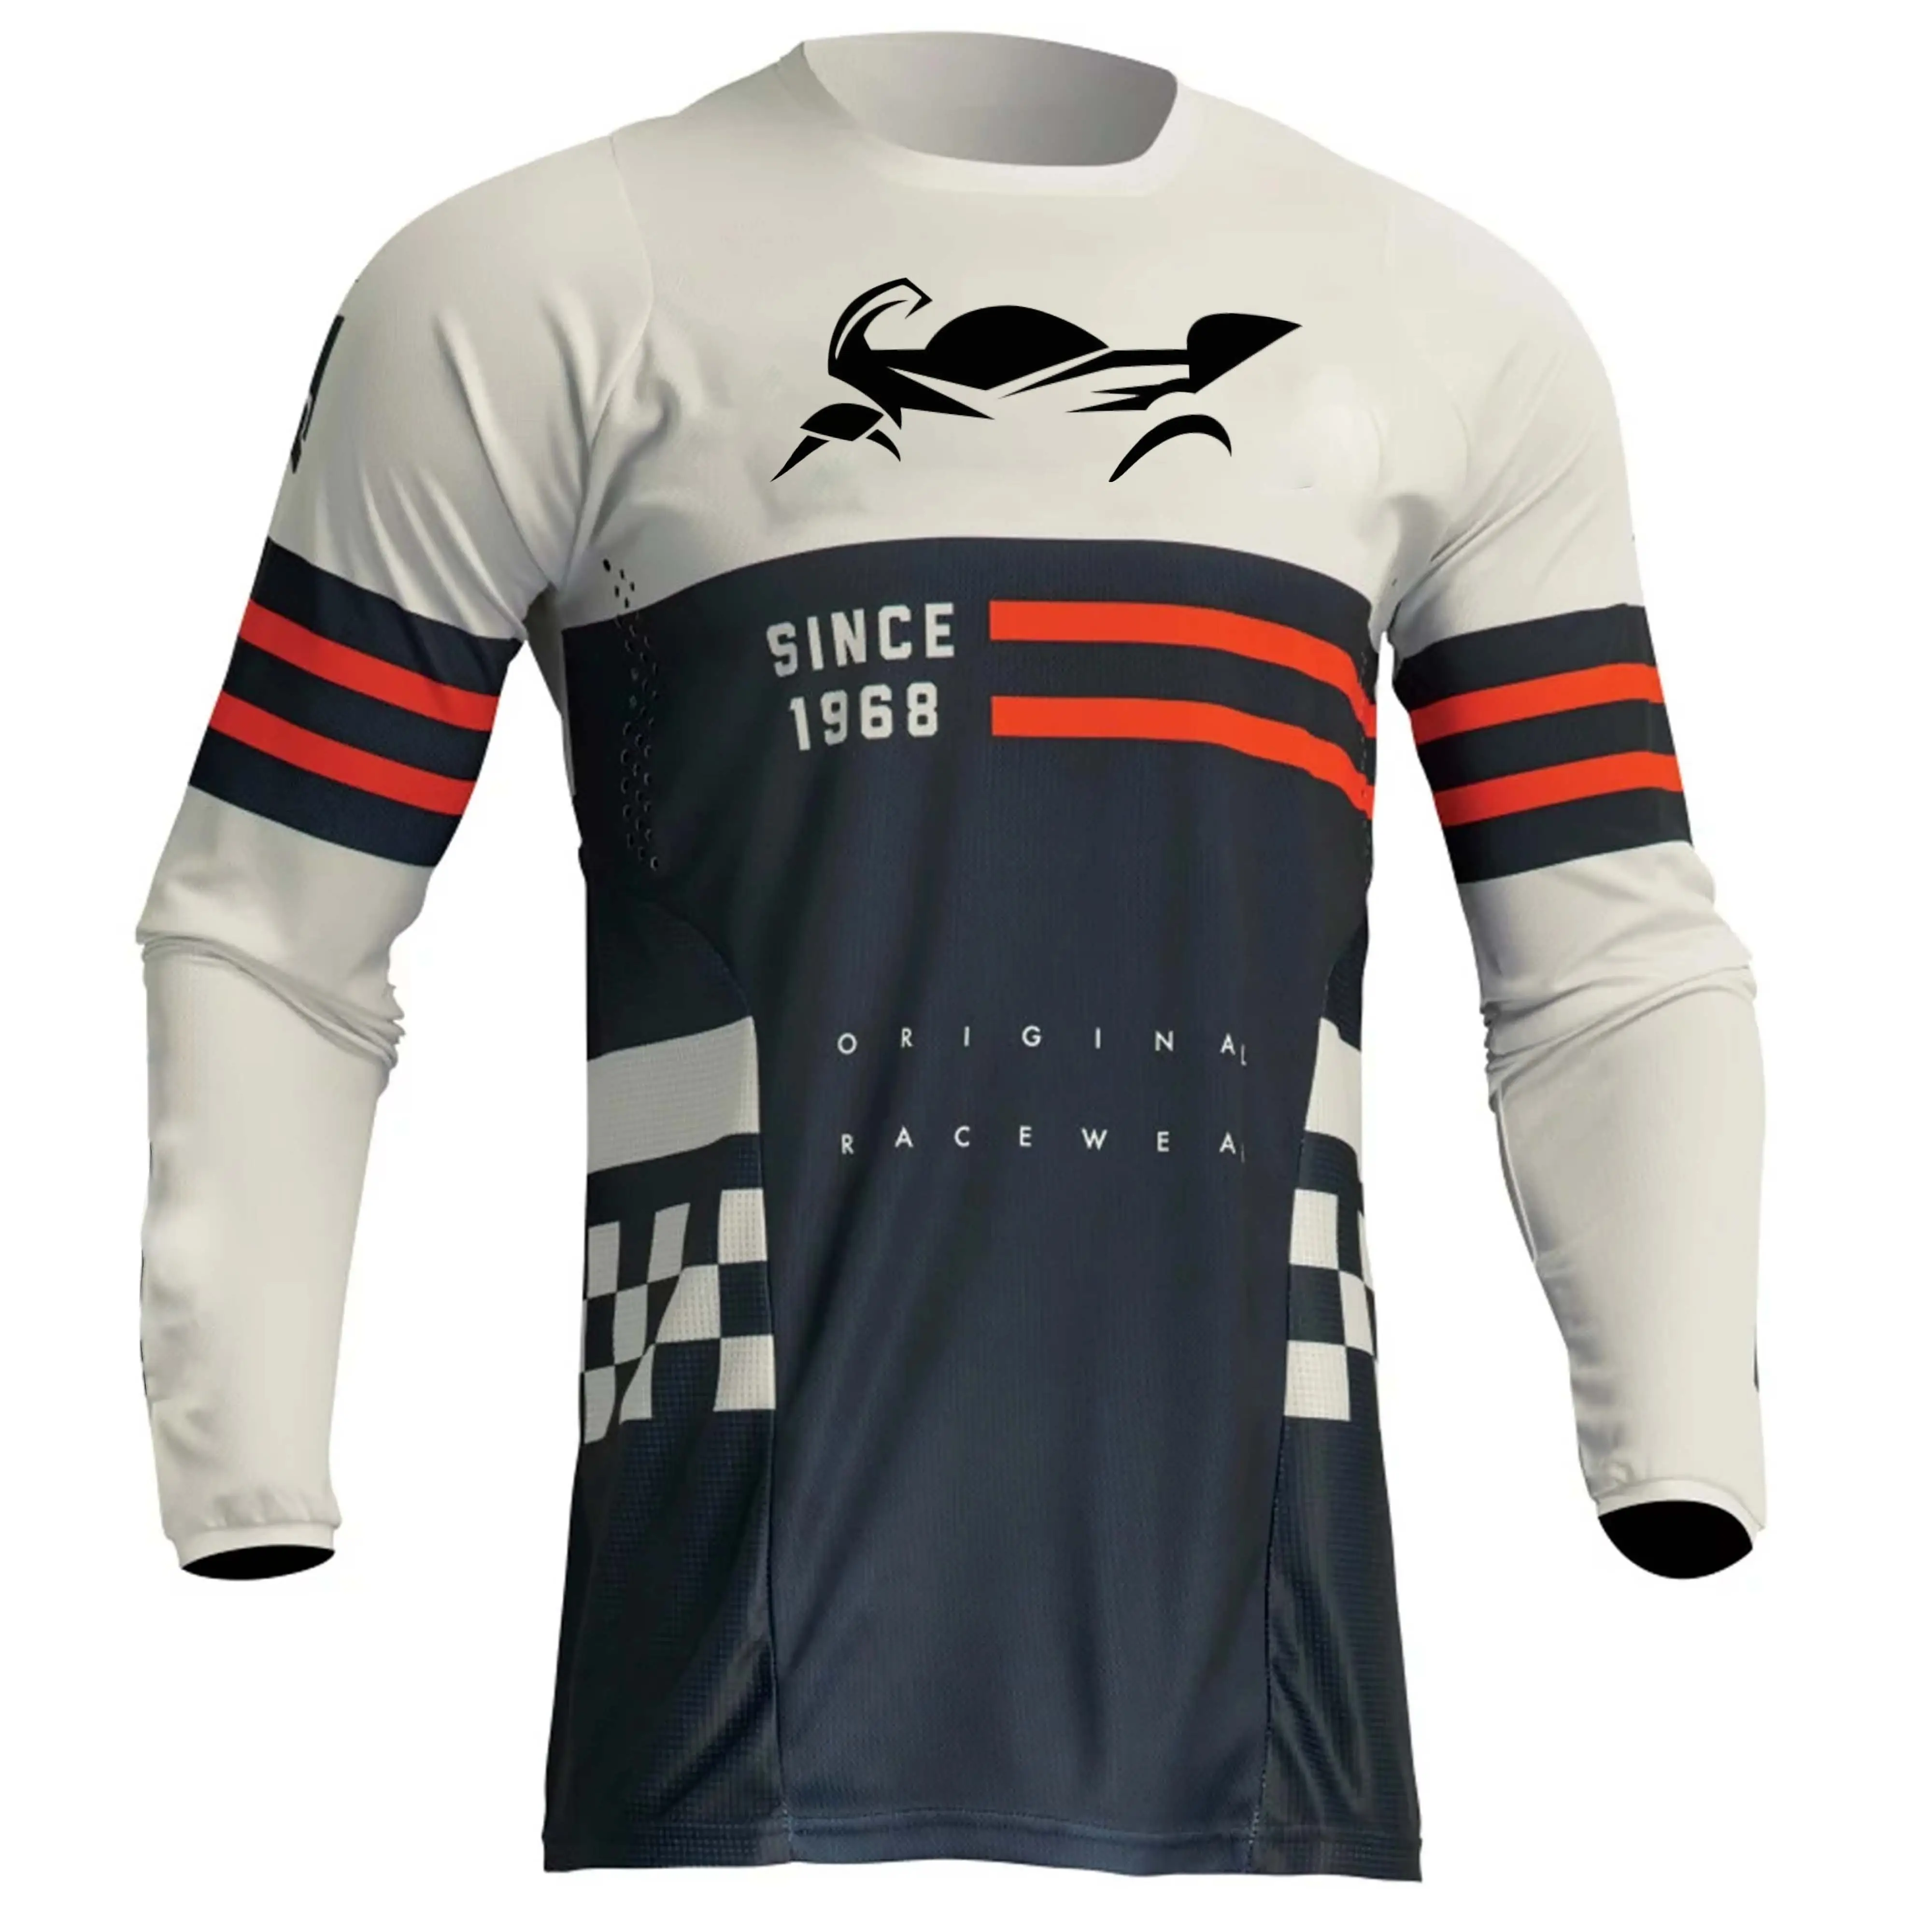 Haute qualité Design personnalisé maillot de course de montagne hommes Motocross maillot adulte moto chemises